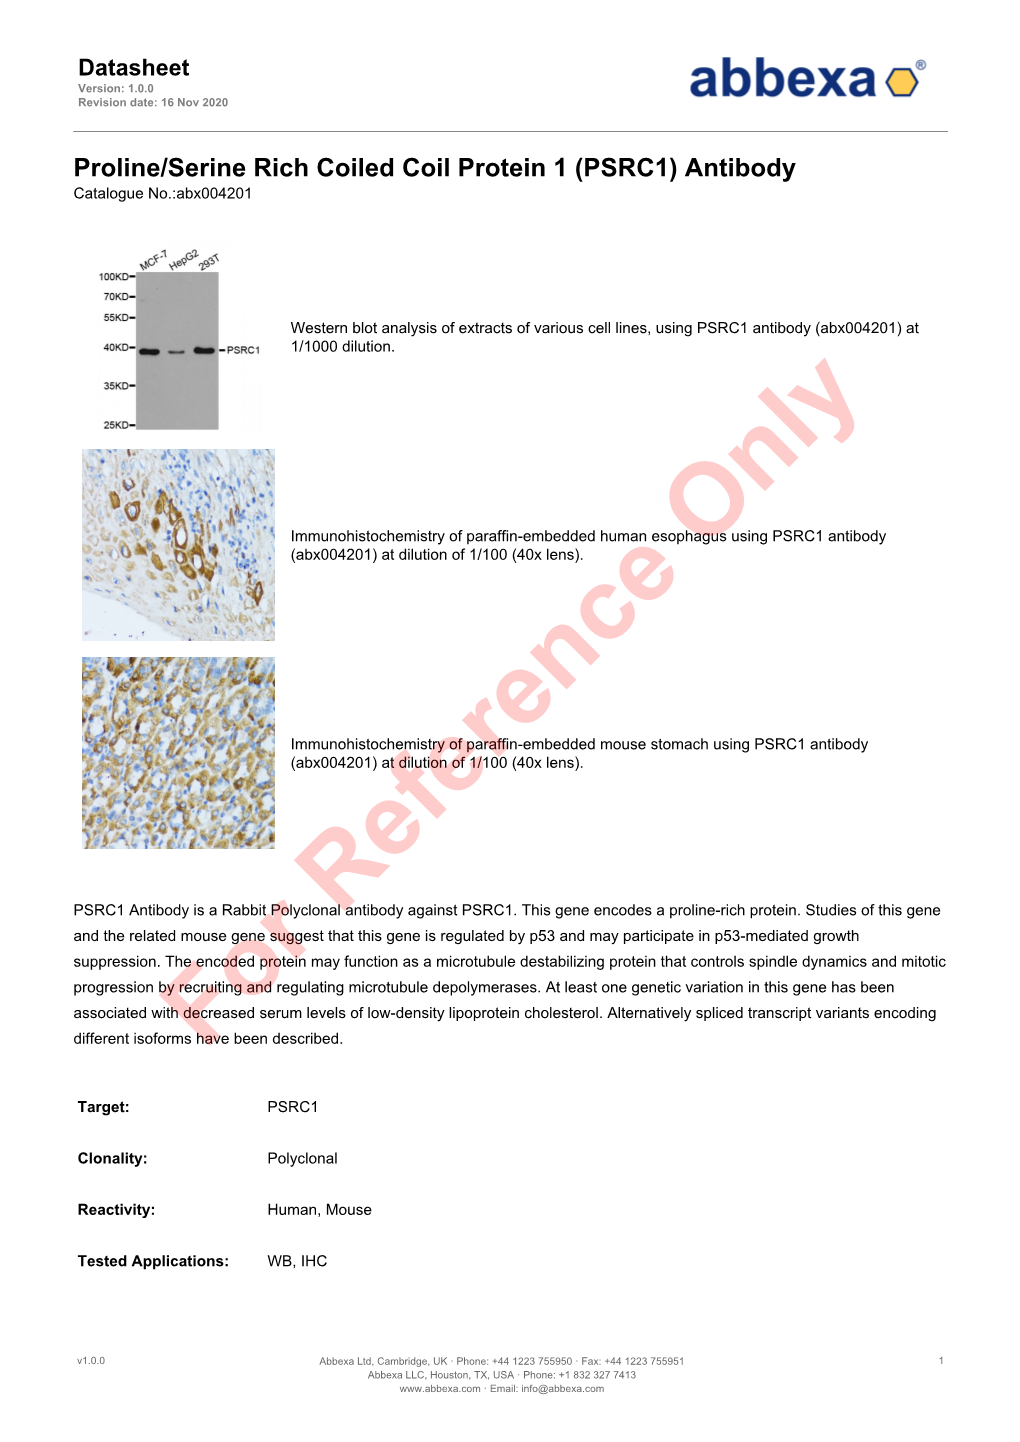 (PSRC1) Antibody Catalogue No.:Abx004201